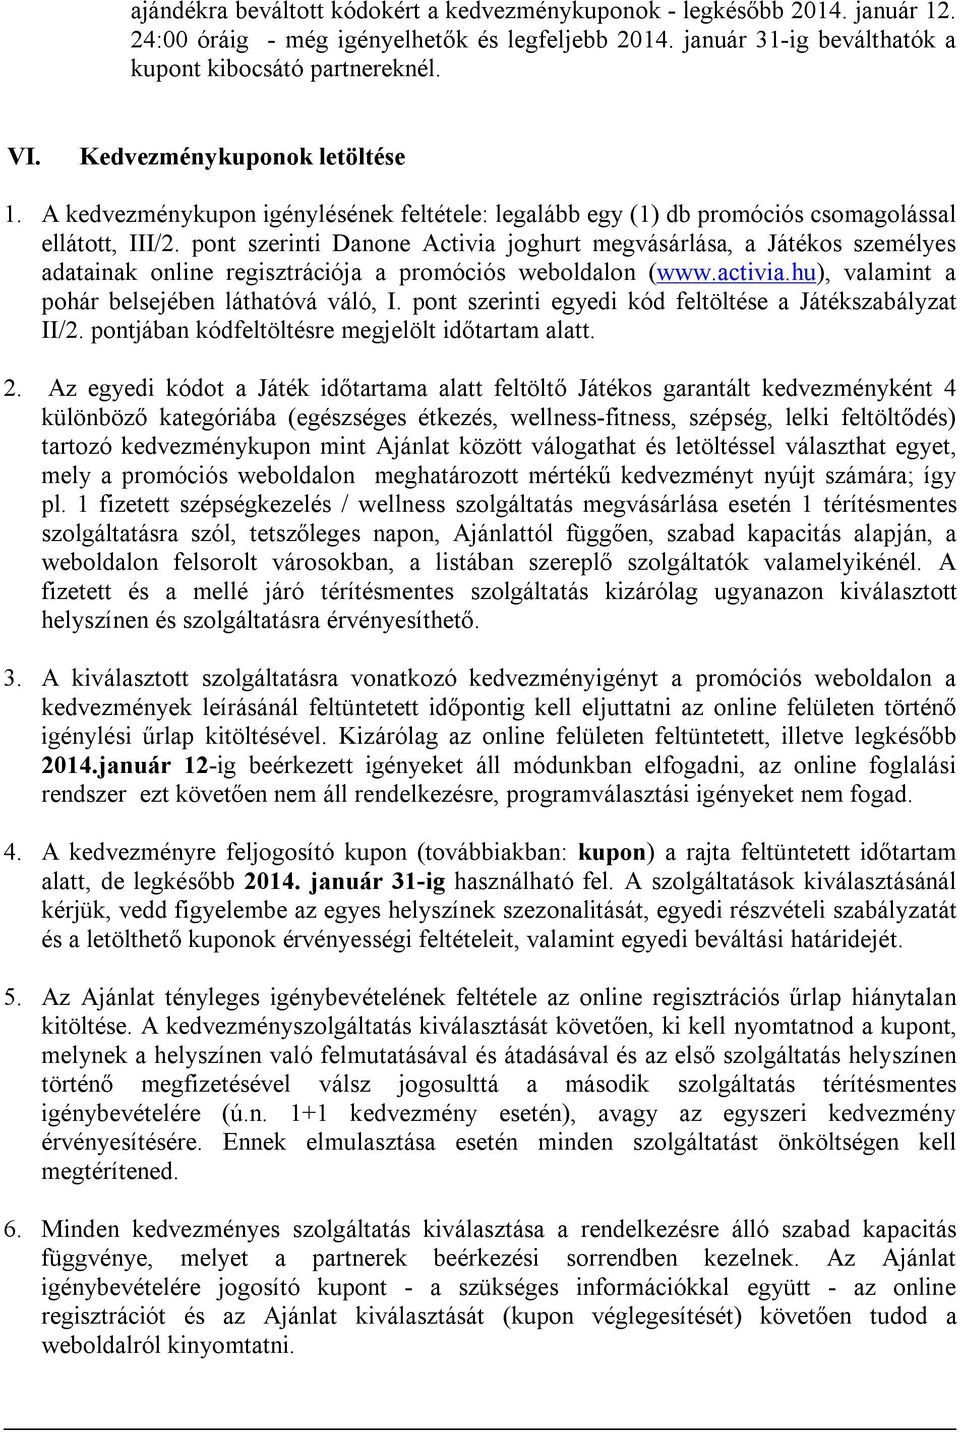 Activia Kupon Promóció Játékszabályzat - PDF Ingyenes letöltés